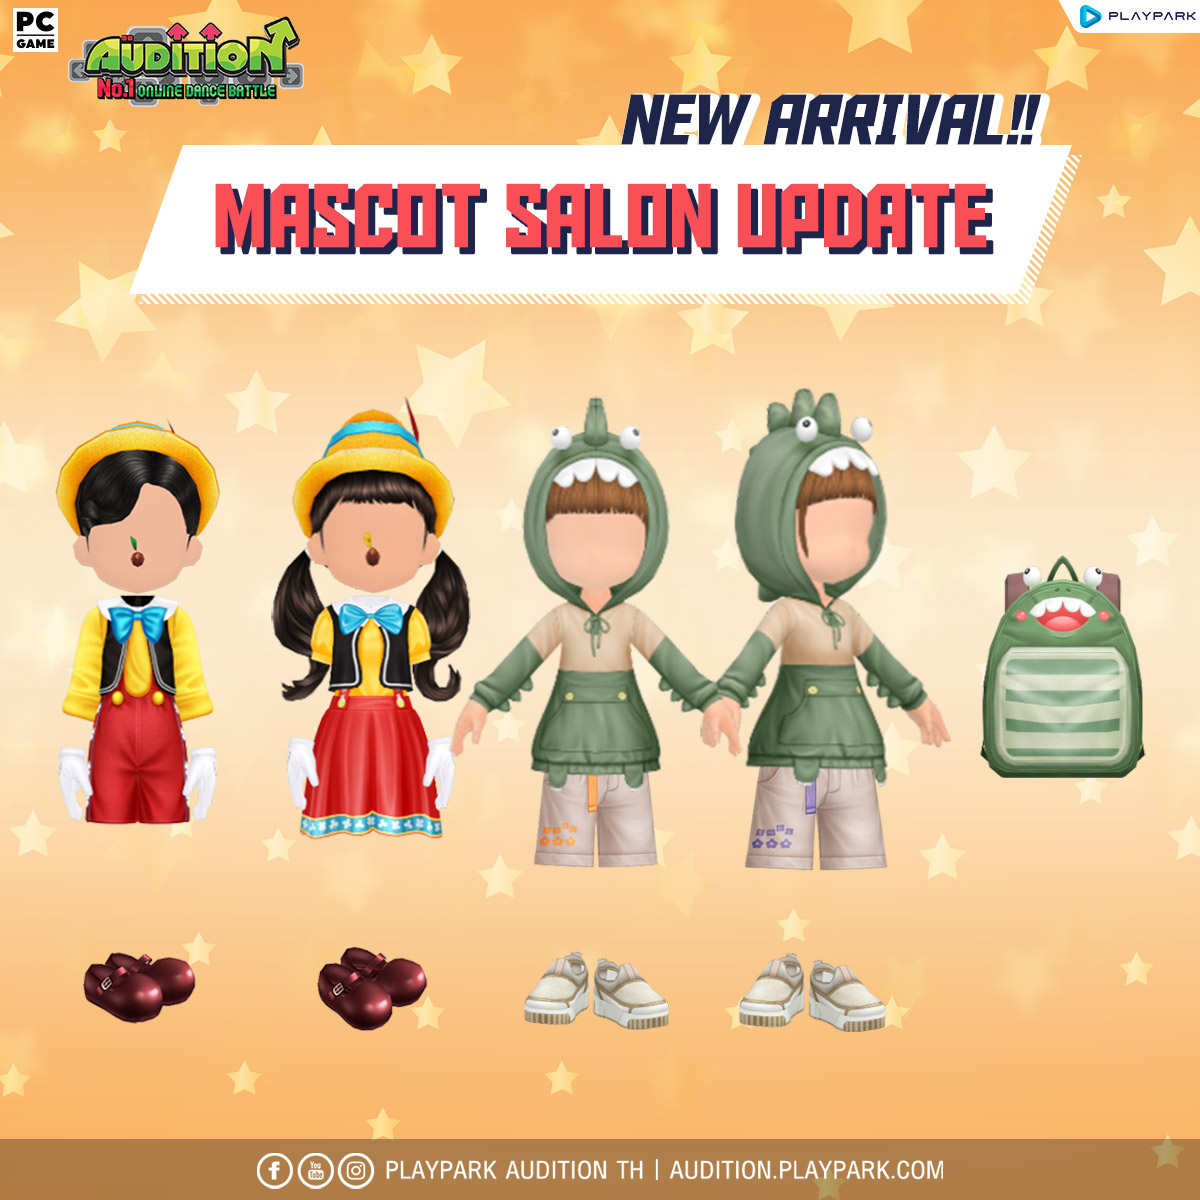 2 พฤศจิกายนนี้ Update เพลงใหม่, Mascot Salon และไอเทมใหม่!!  